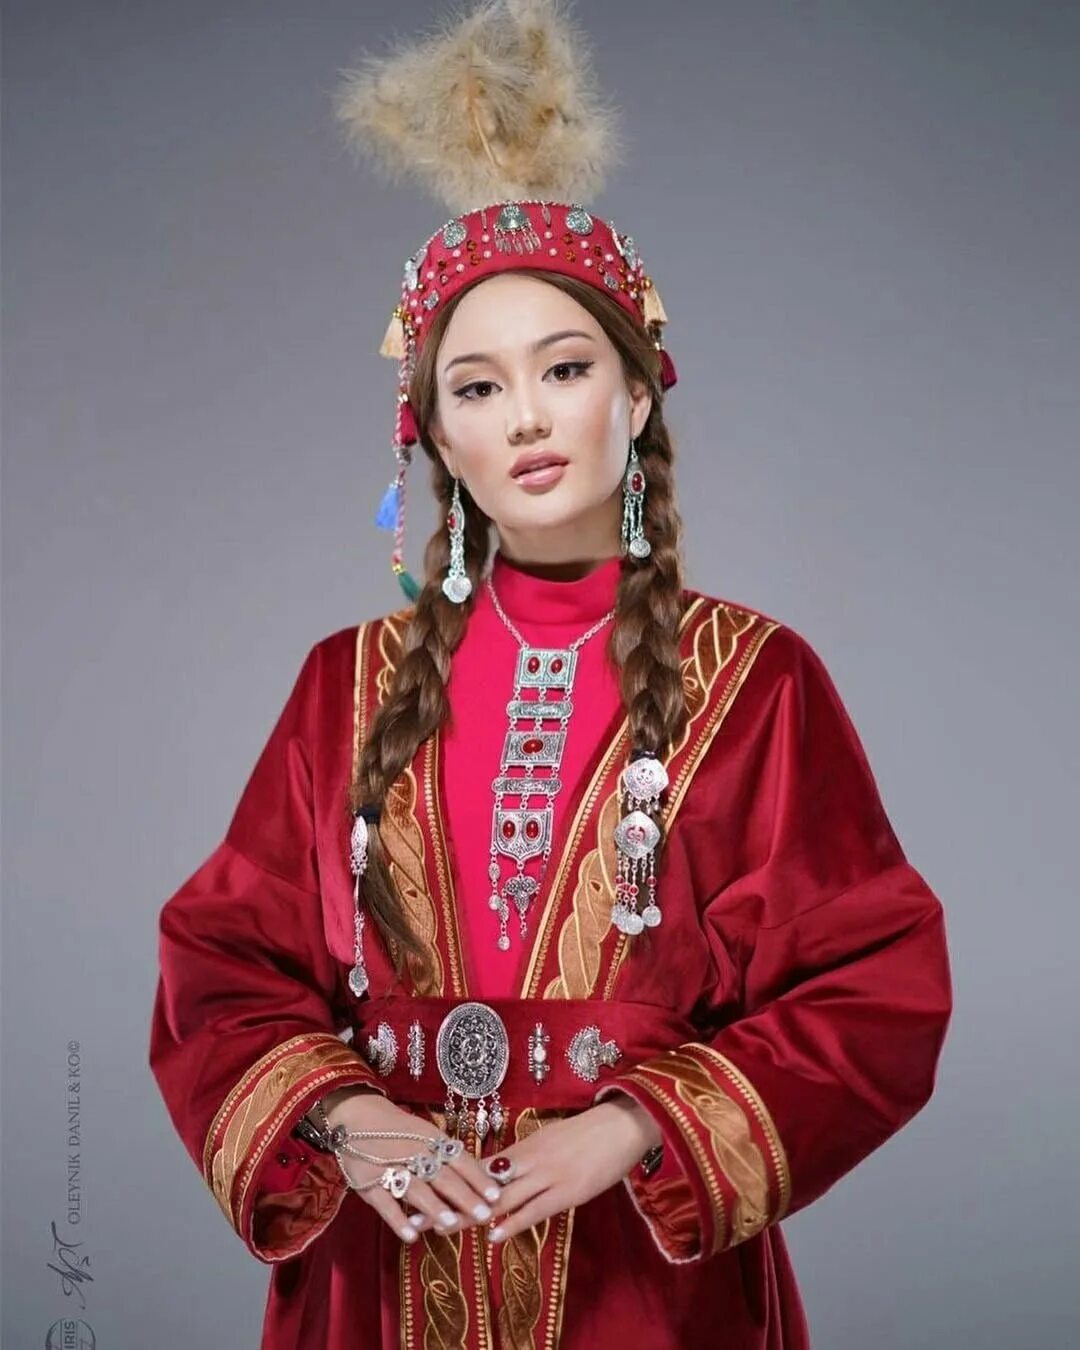 Национальная одежда казахов. Народная одежда Казахстана. Казахский нац костюм. Традиционный казахский костюм. Казашки 3